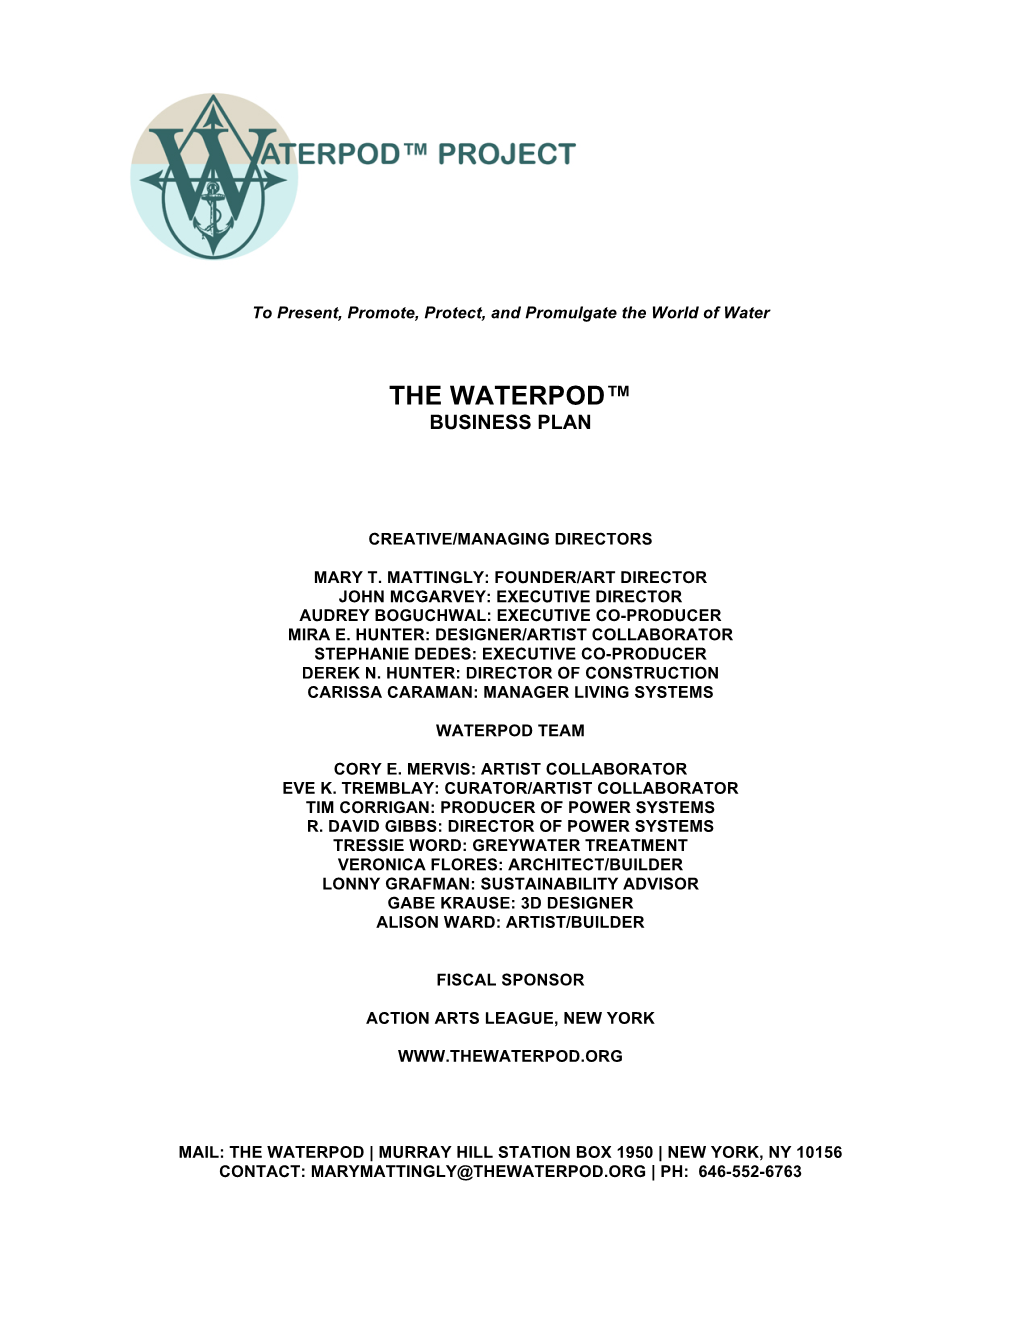 The Waterpod™ Business Plan